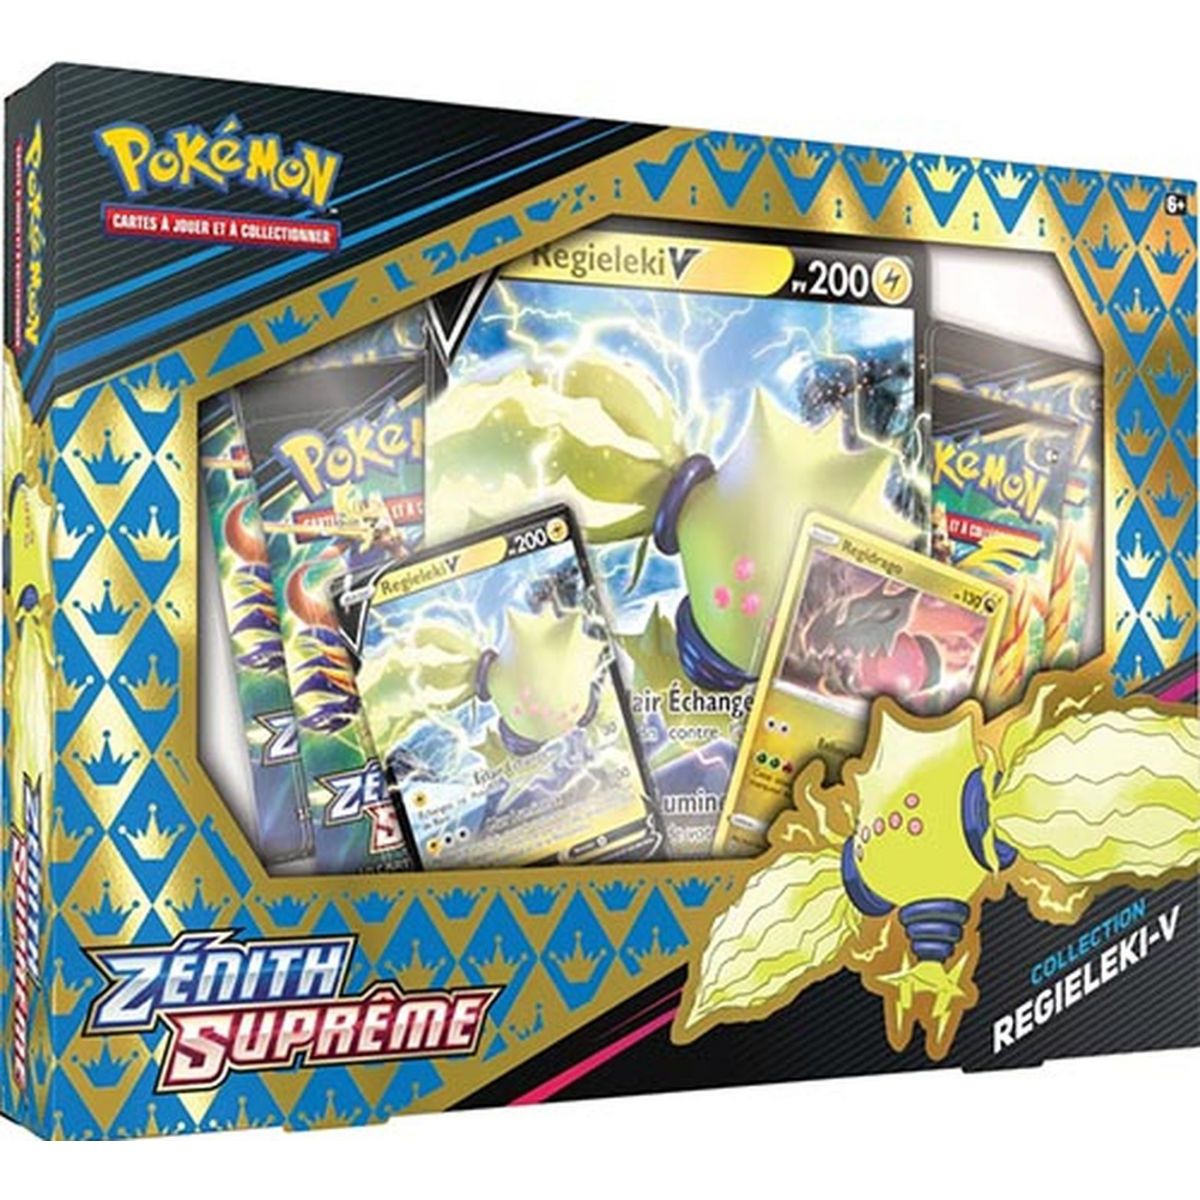 Pokémon - Box - Regieleki V - Zenith Supreme [EB12.5] - FR